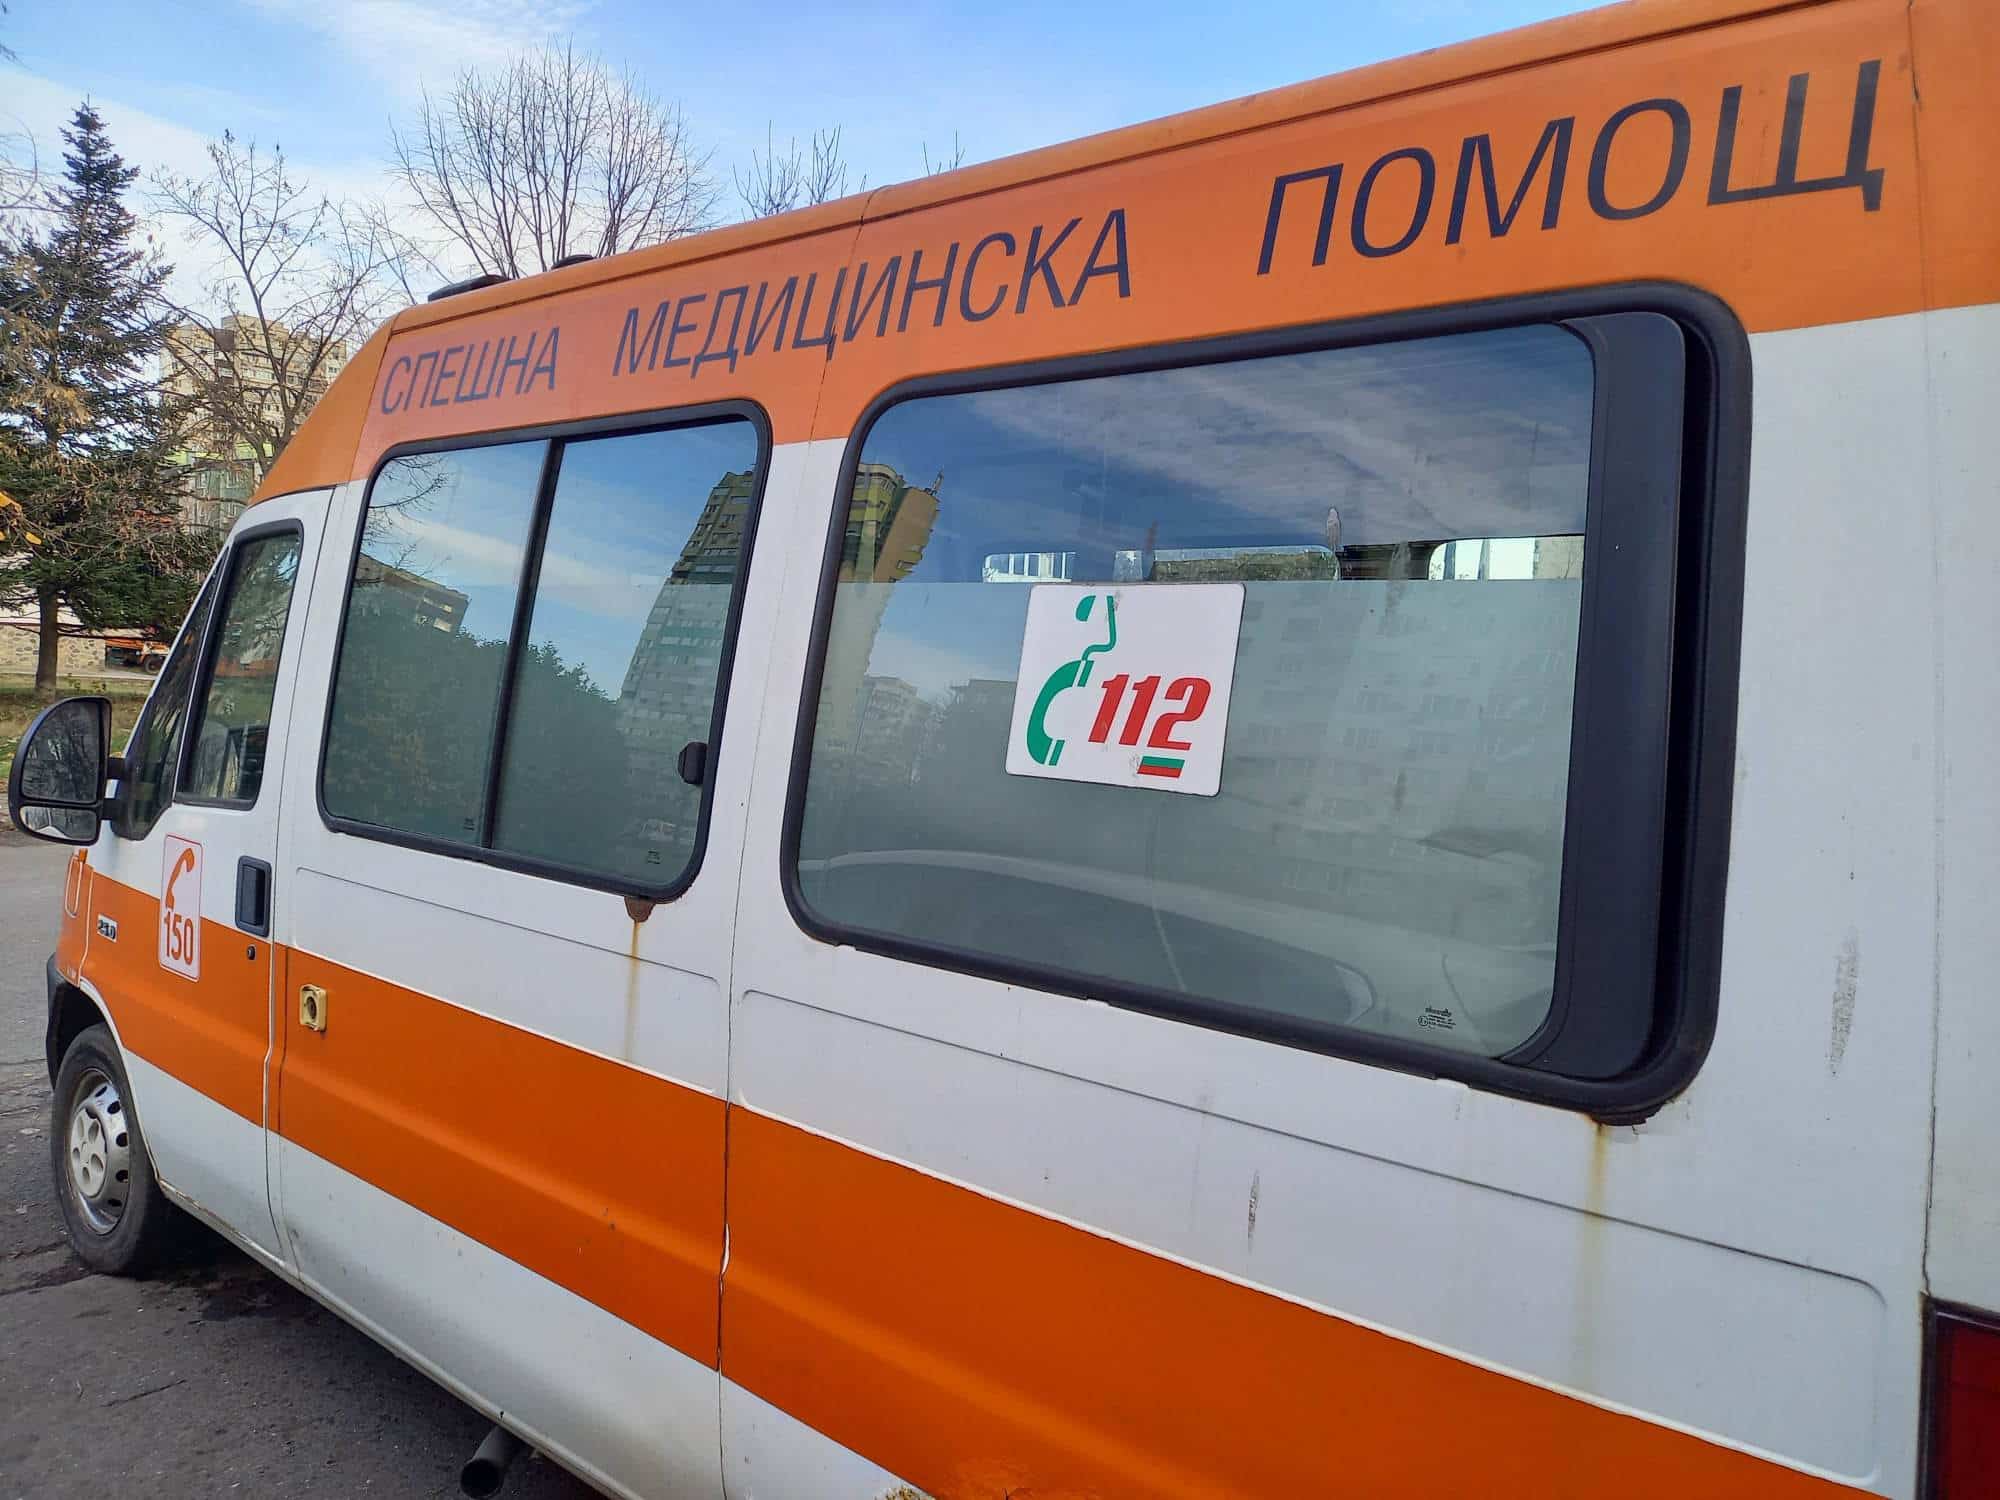 Пенсионер е пострадал при пътнотранспортно произшествие съобщиха от ОДМВР Стара Загора Около